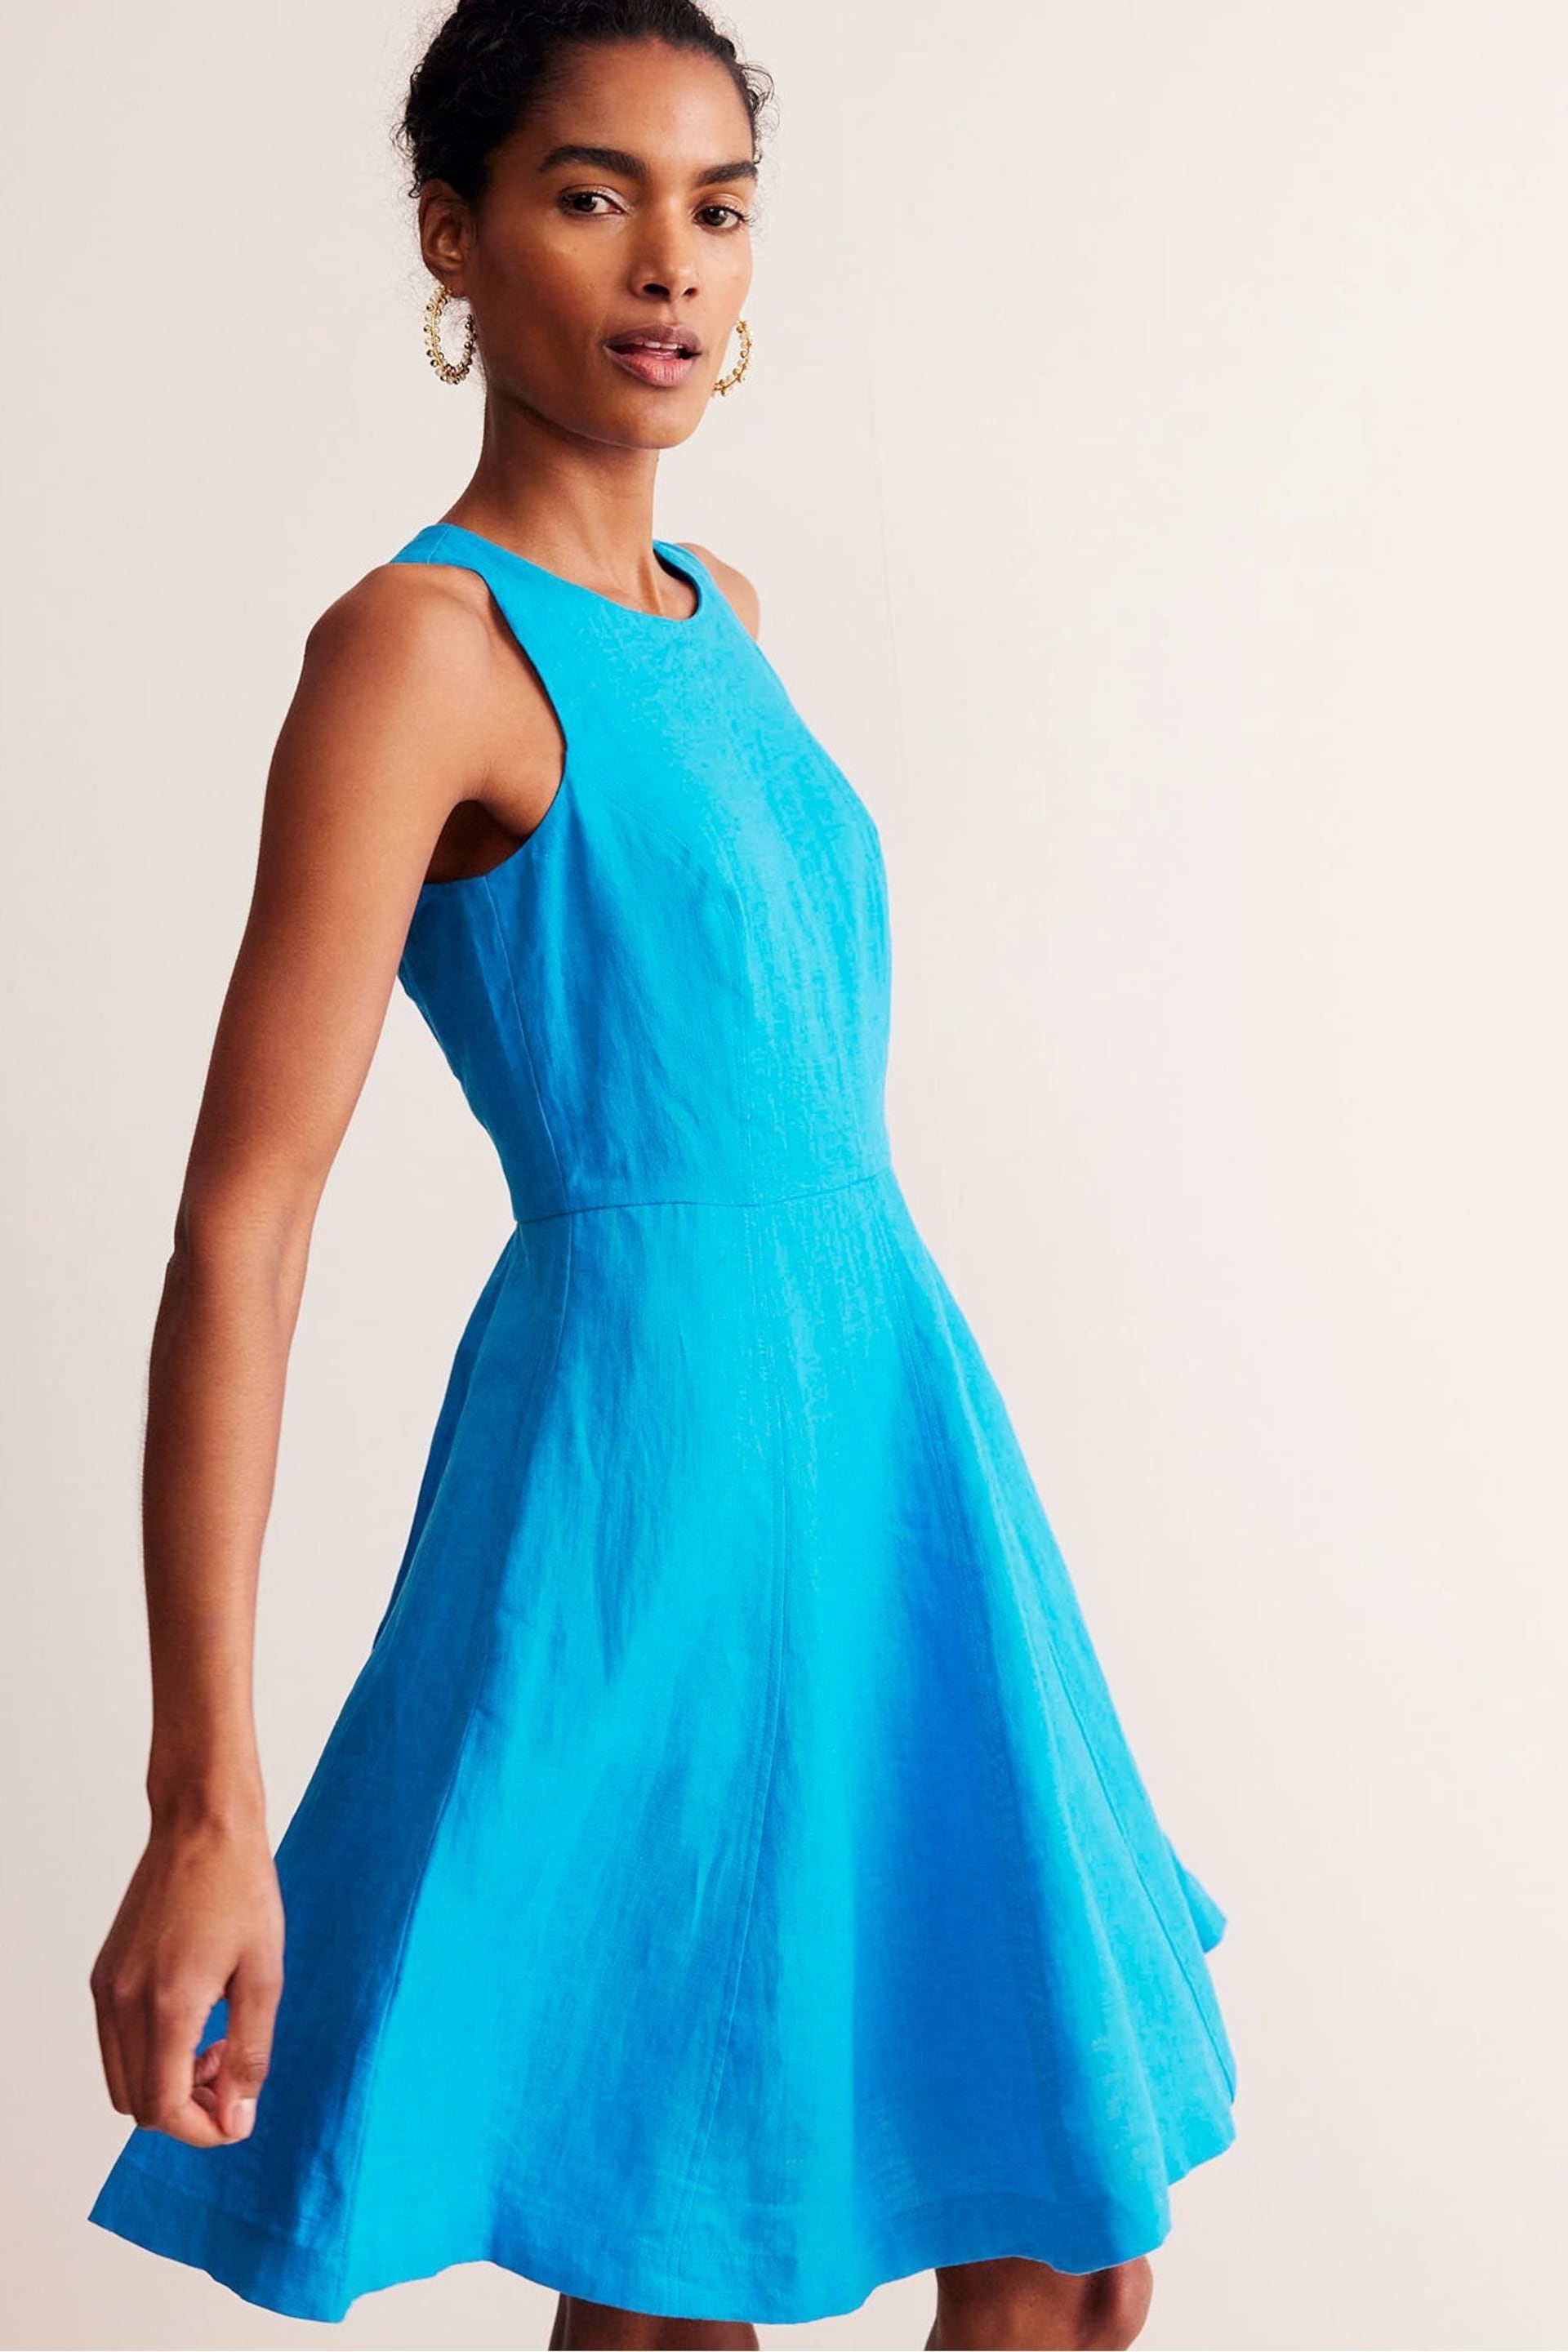 Boden Blue Carla Linen Short Dress - Image 1 of 6